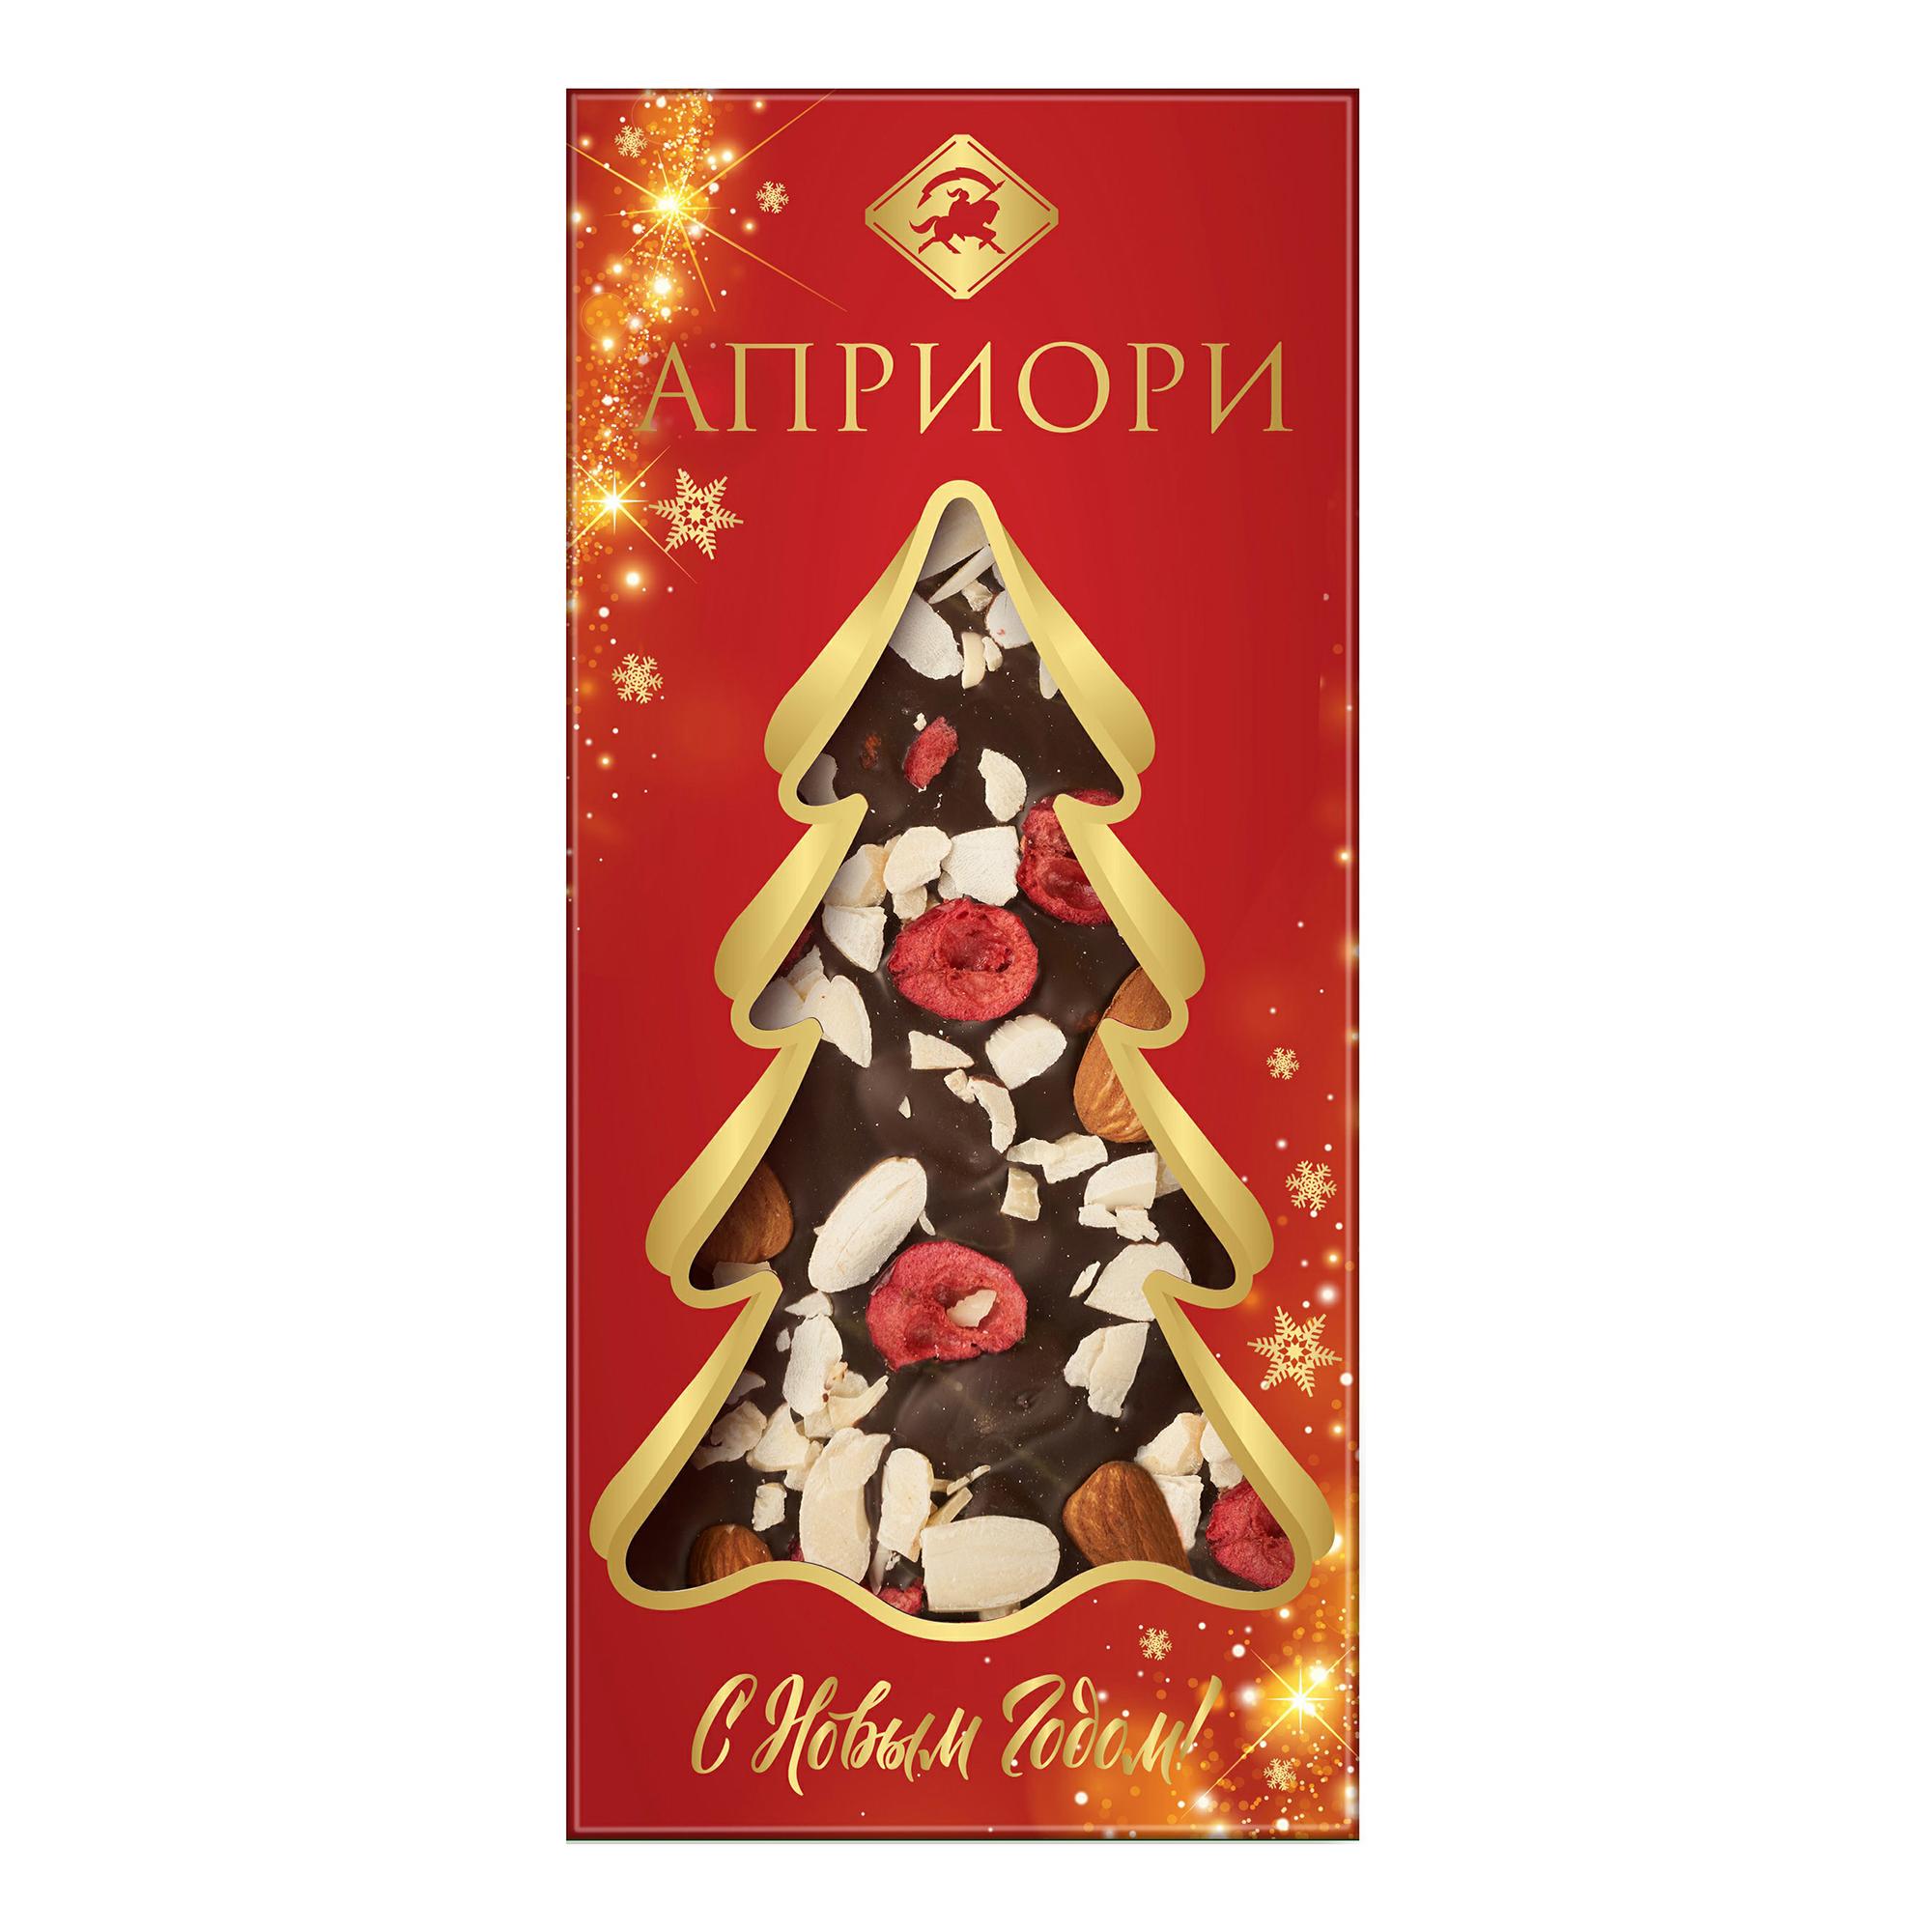 Шоколад Априори, ассорти горький миндаль-клюква, 100 гр., картон